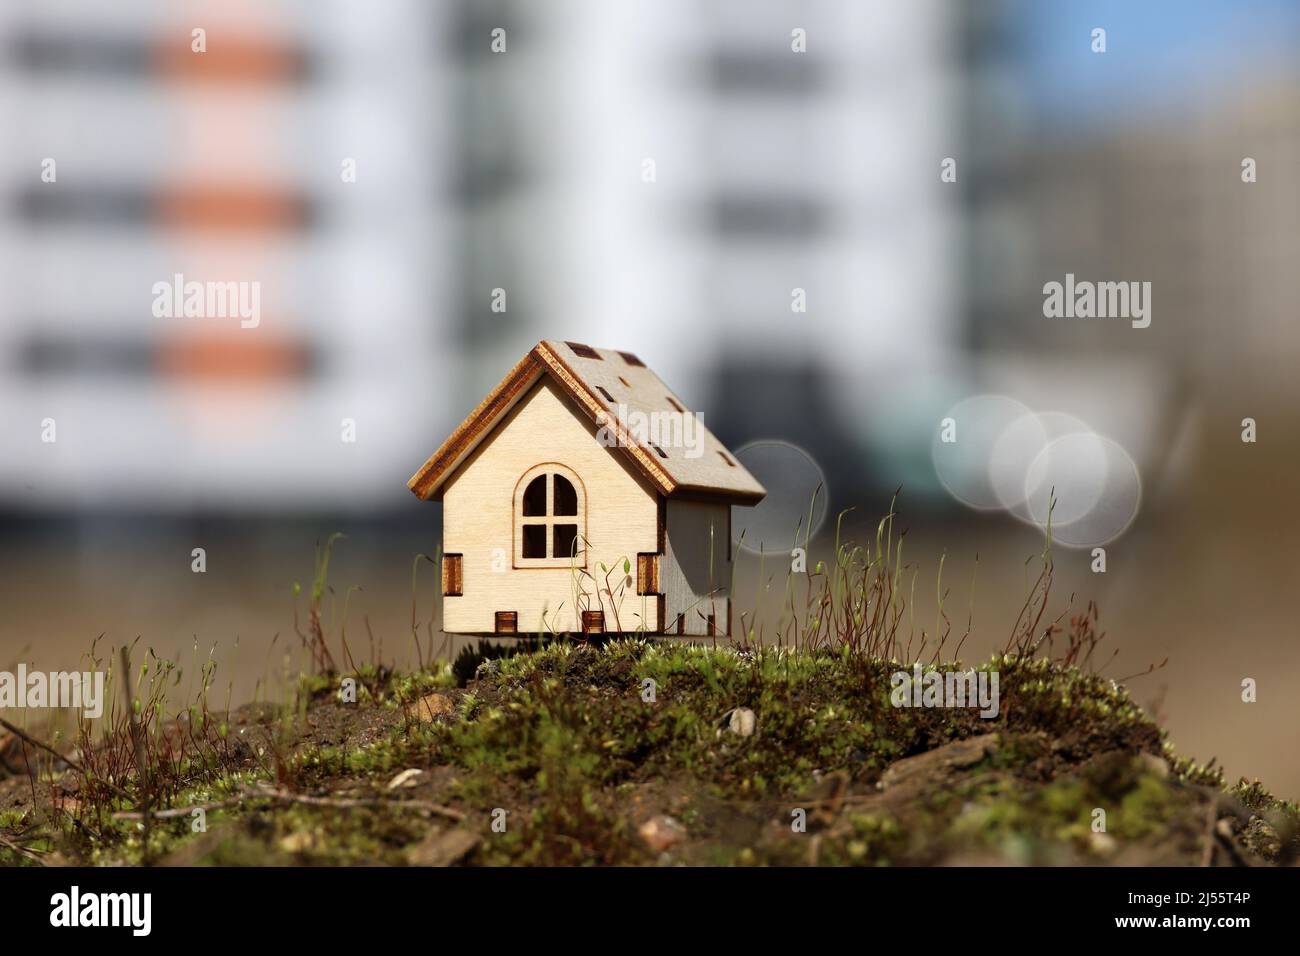 Holzhausmodell auf dem Hintergrund von Hochhäusern. Konzept von Landhaus, Immobilien in ökologisch sauberer Umgebung Stockfoto